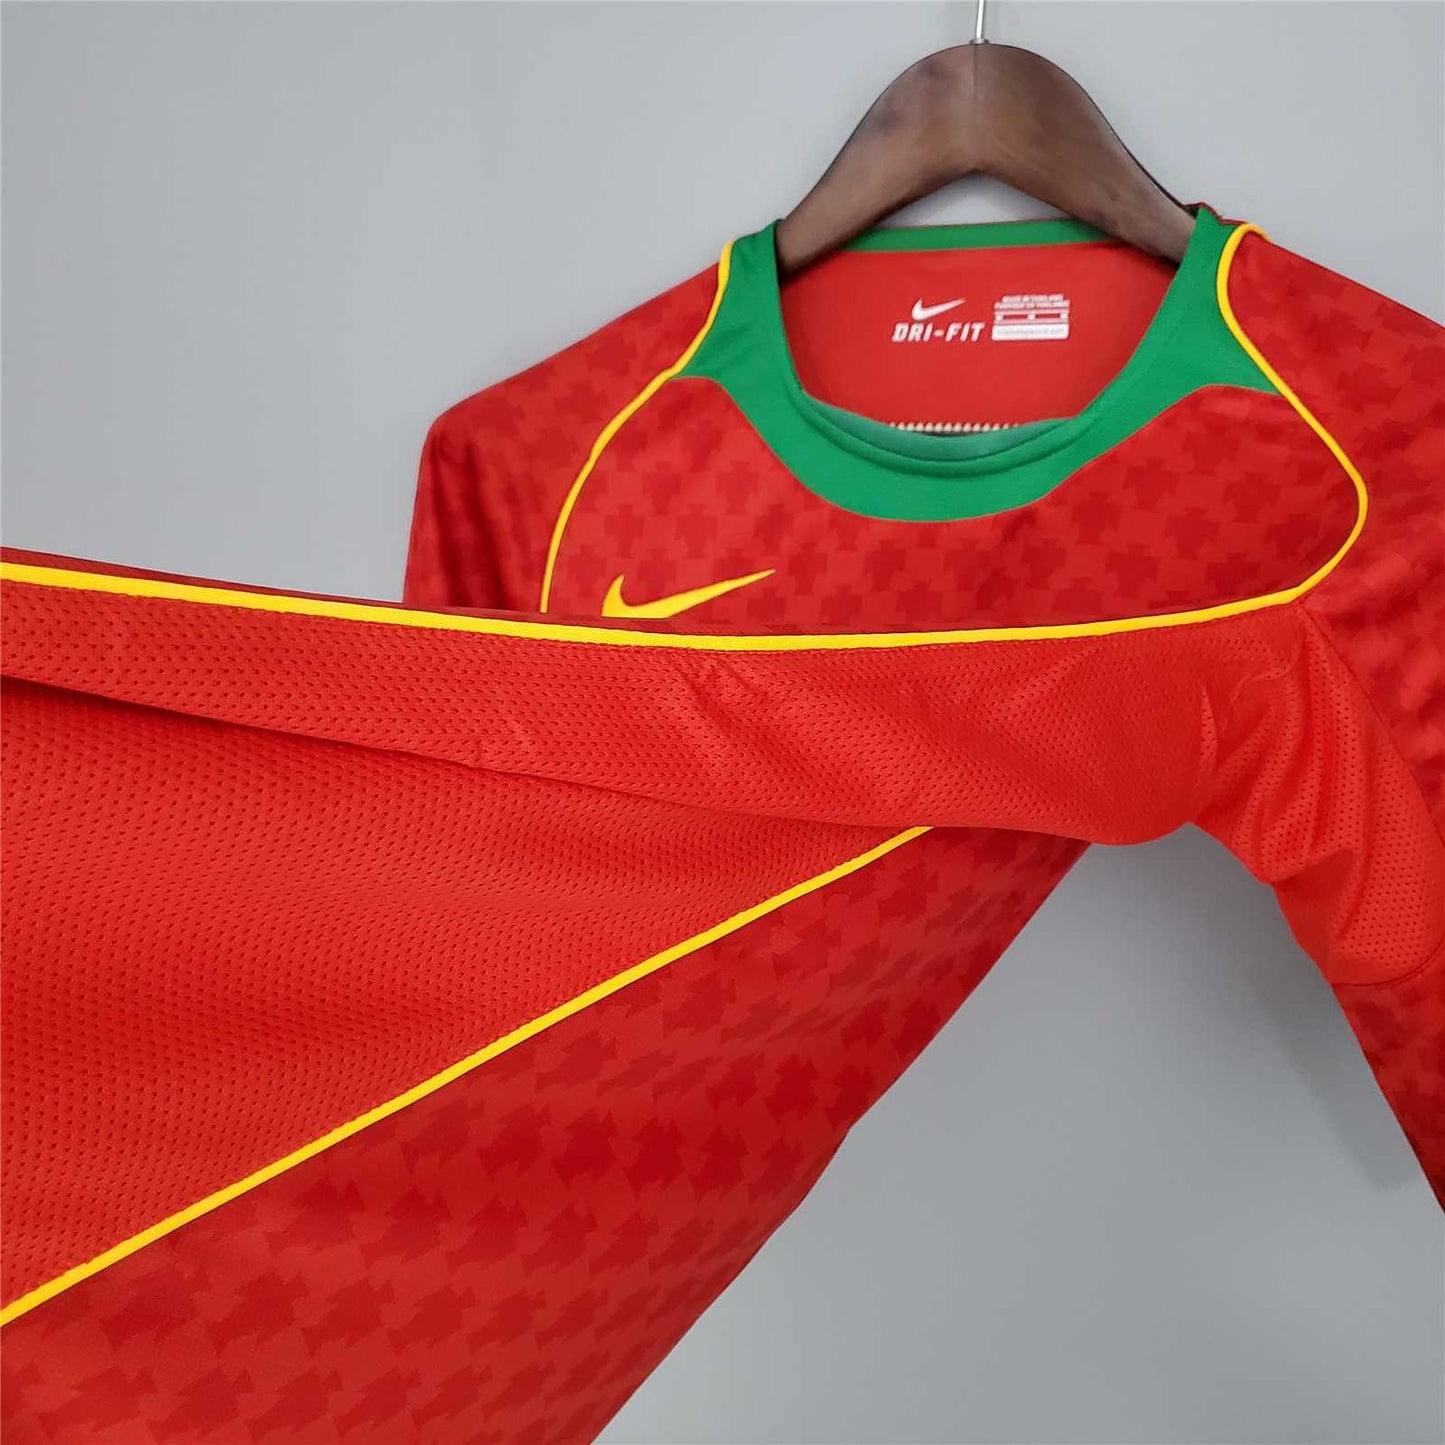 Selección de Portugal. Camiseta local 2004